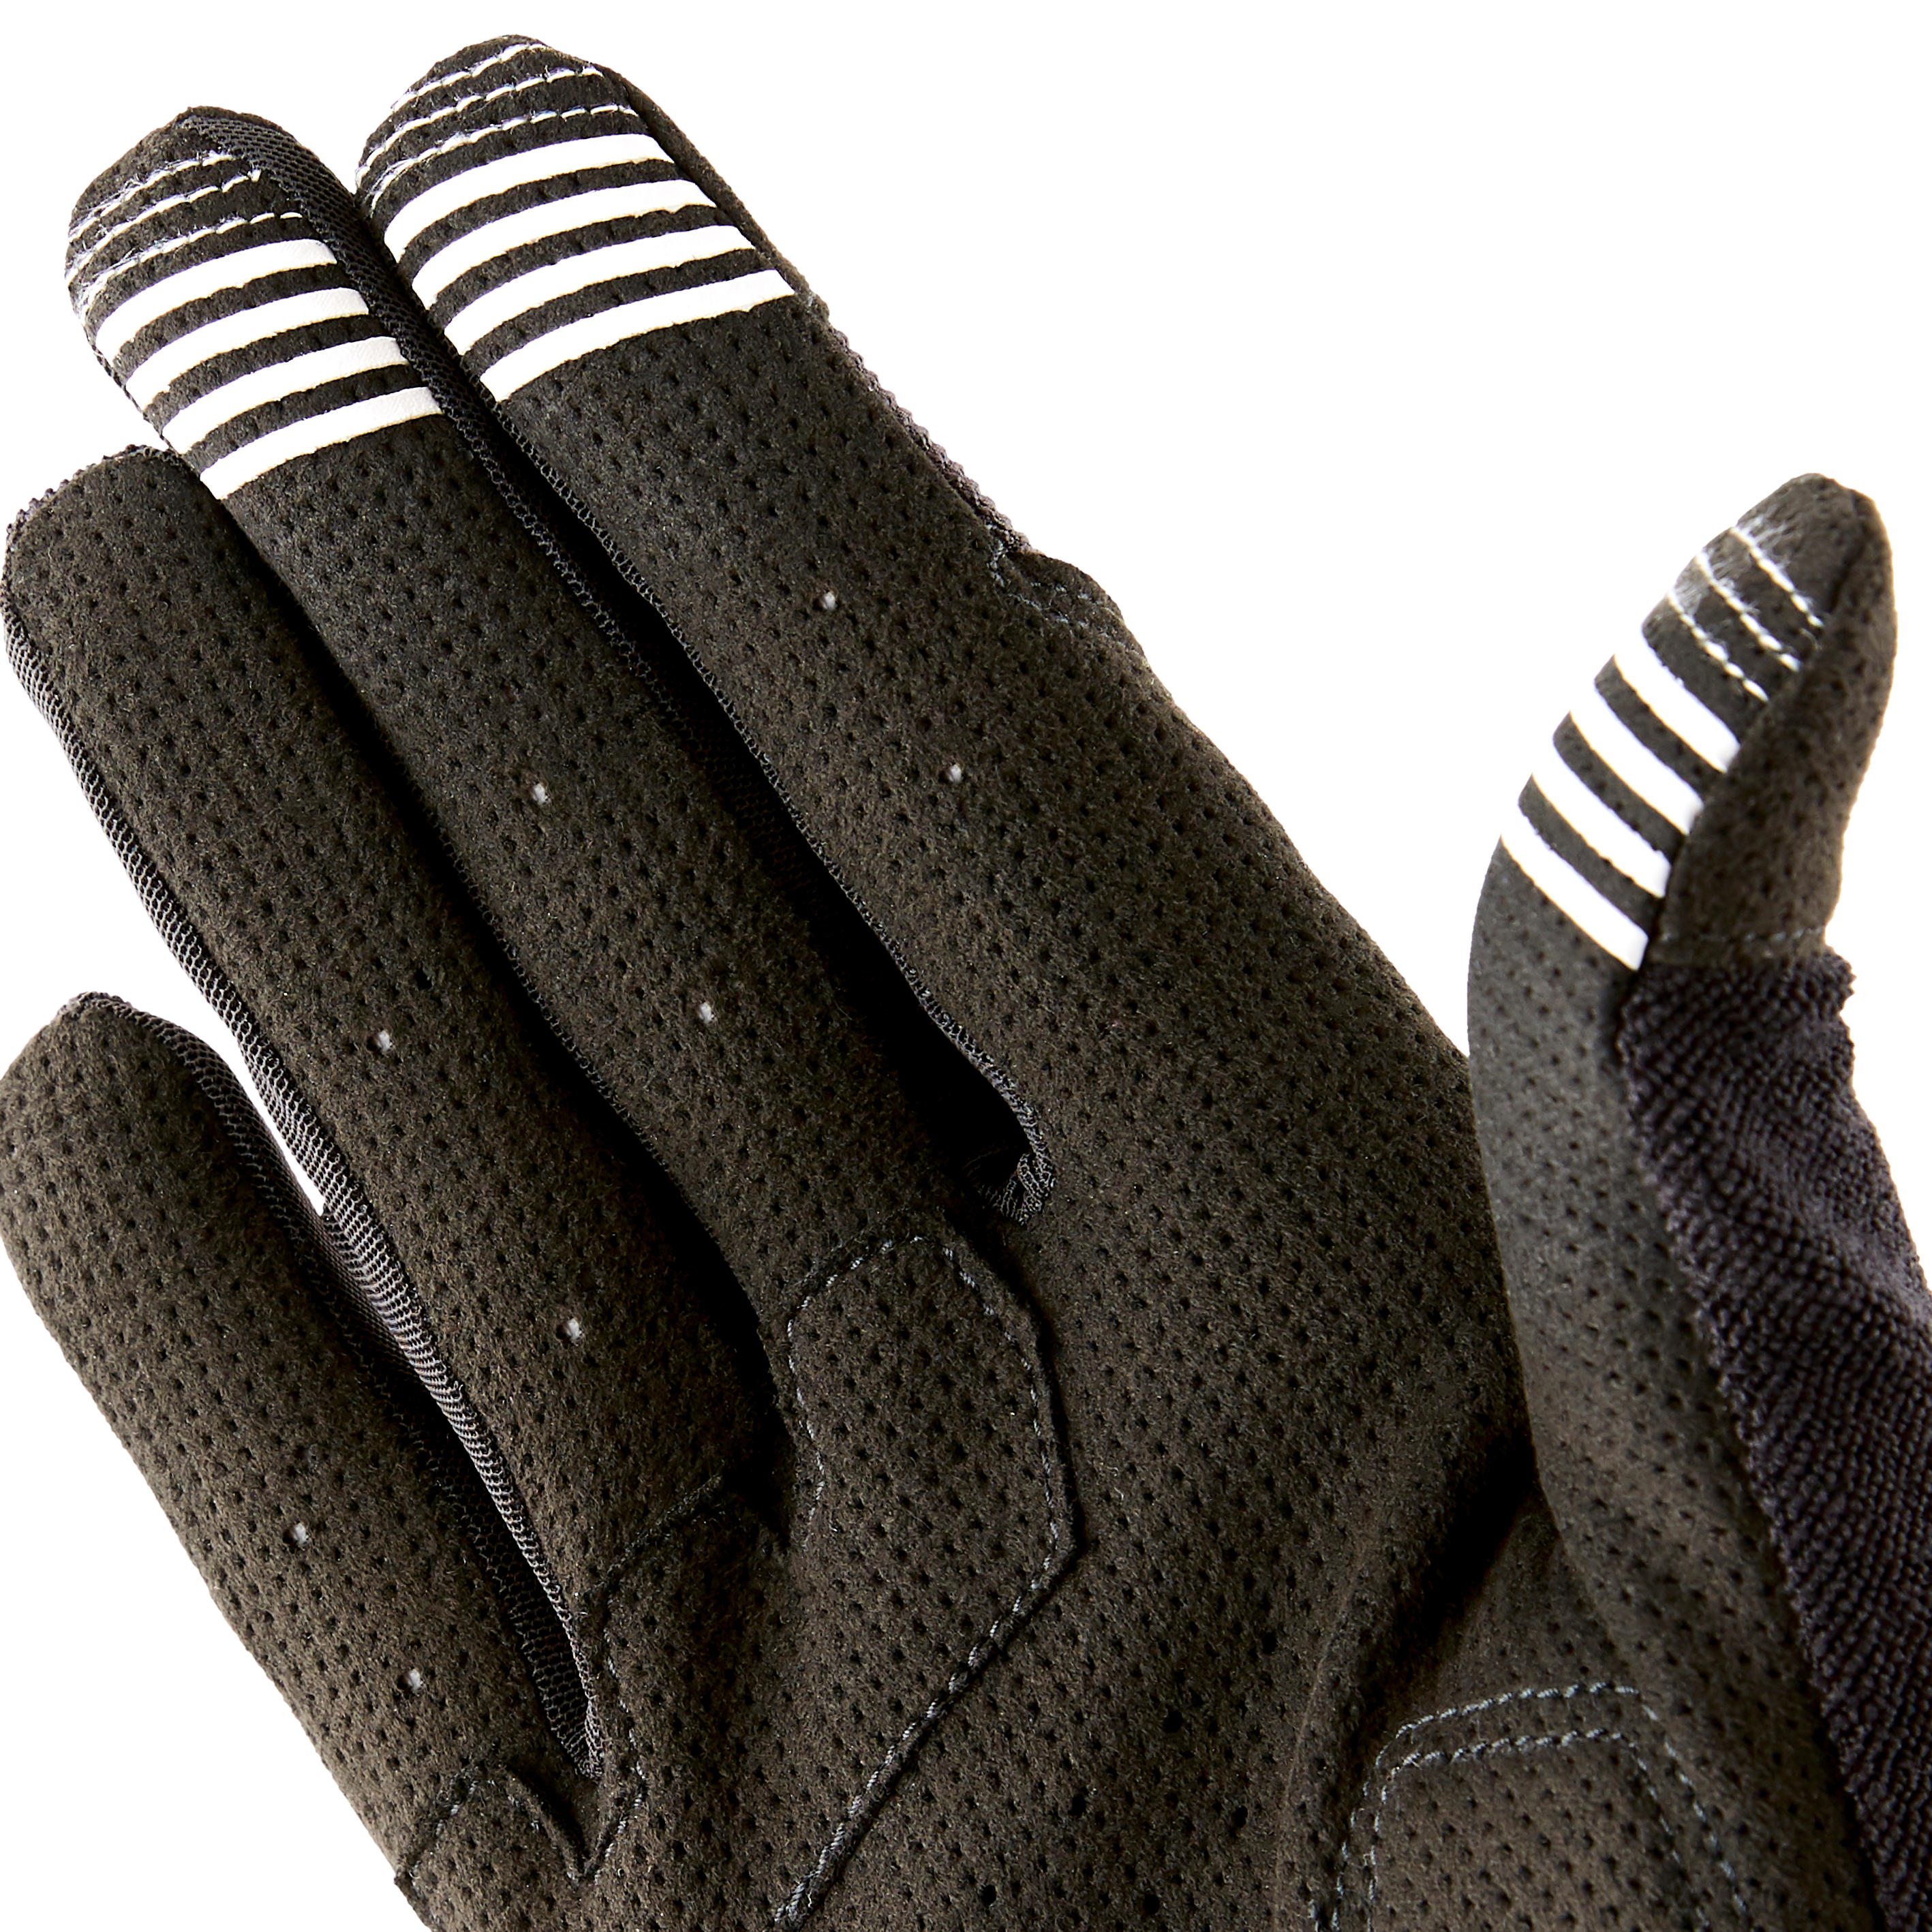 ST 500 mountain biking gloves - ROCKRIDER